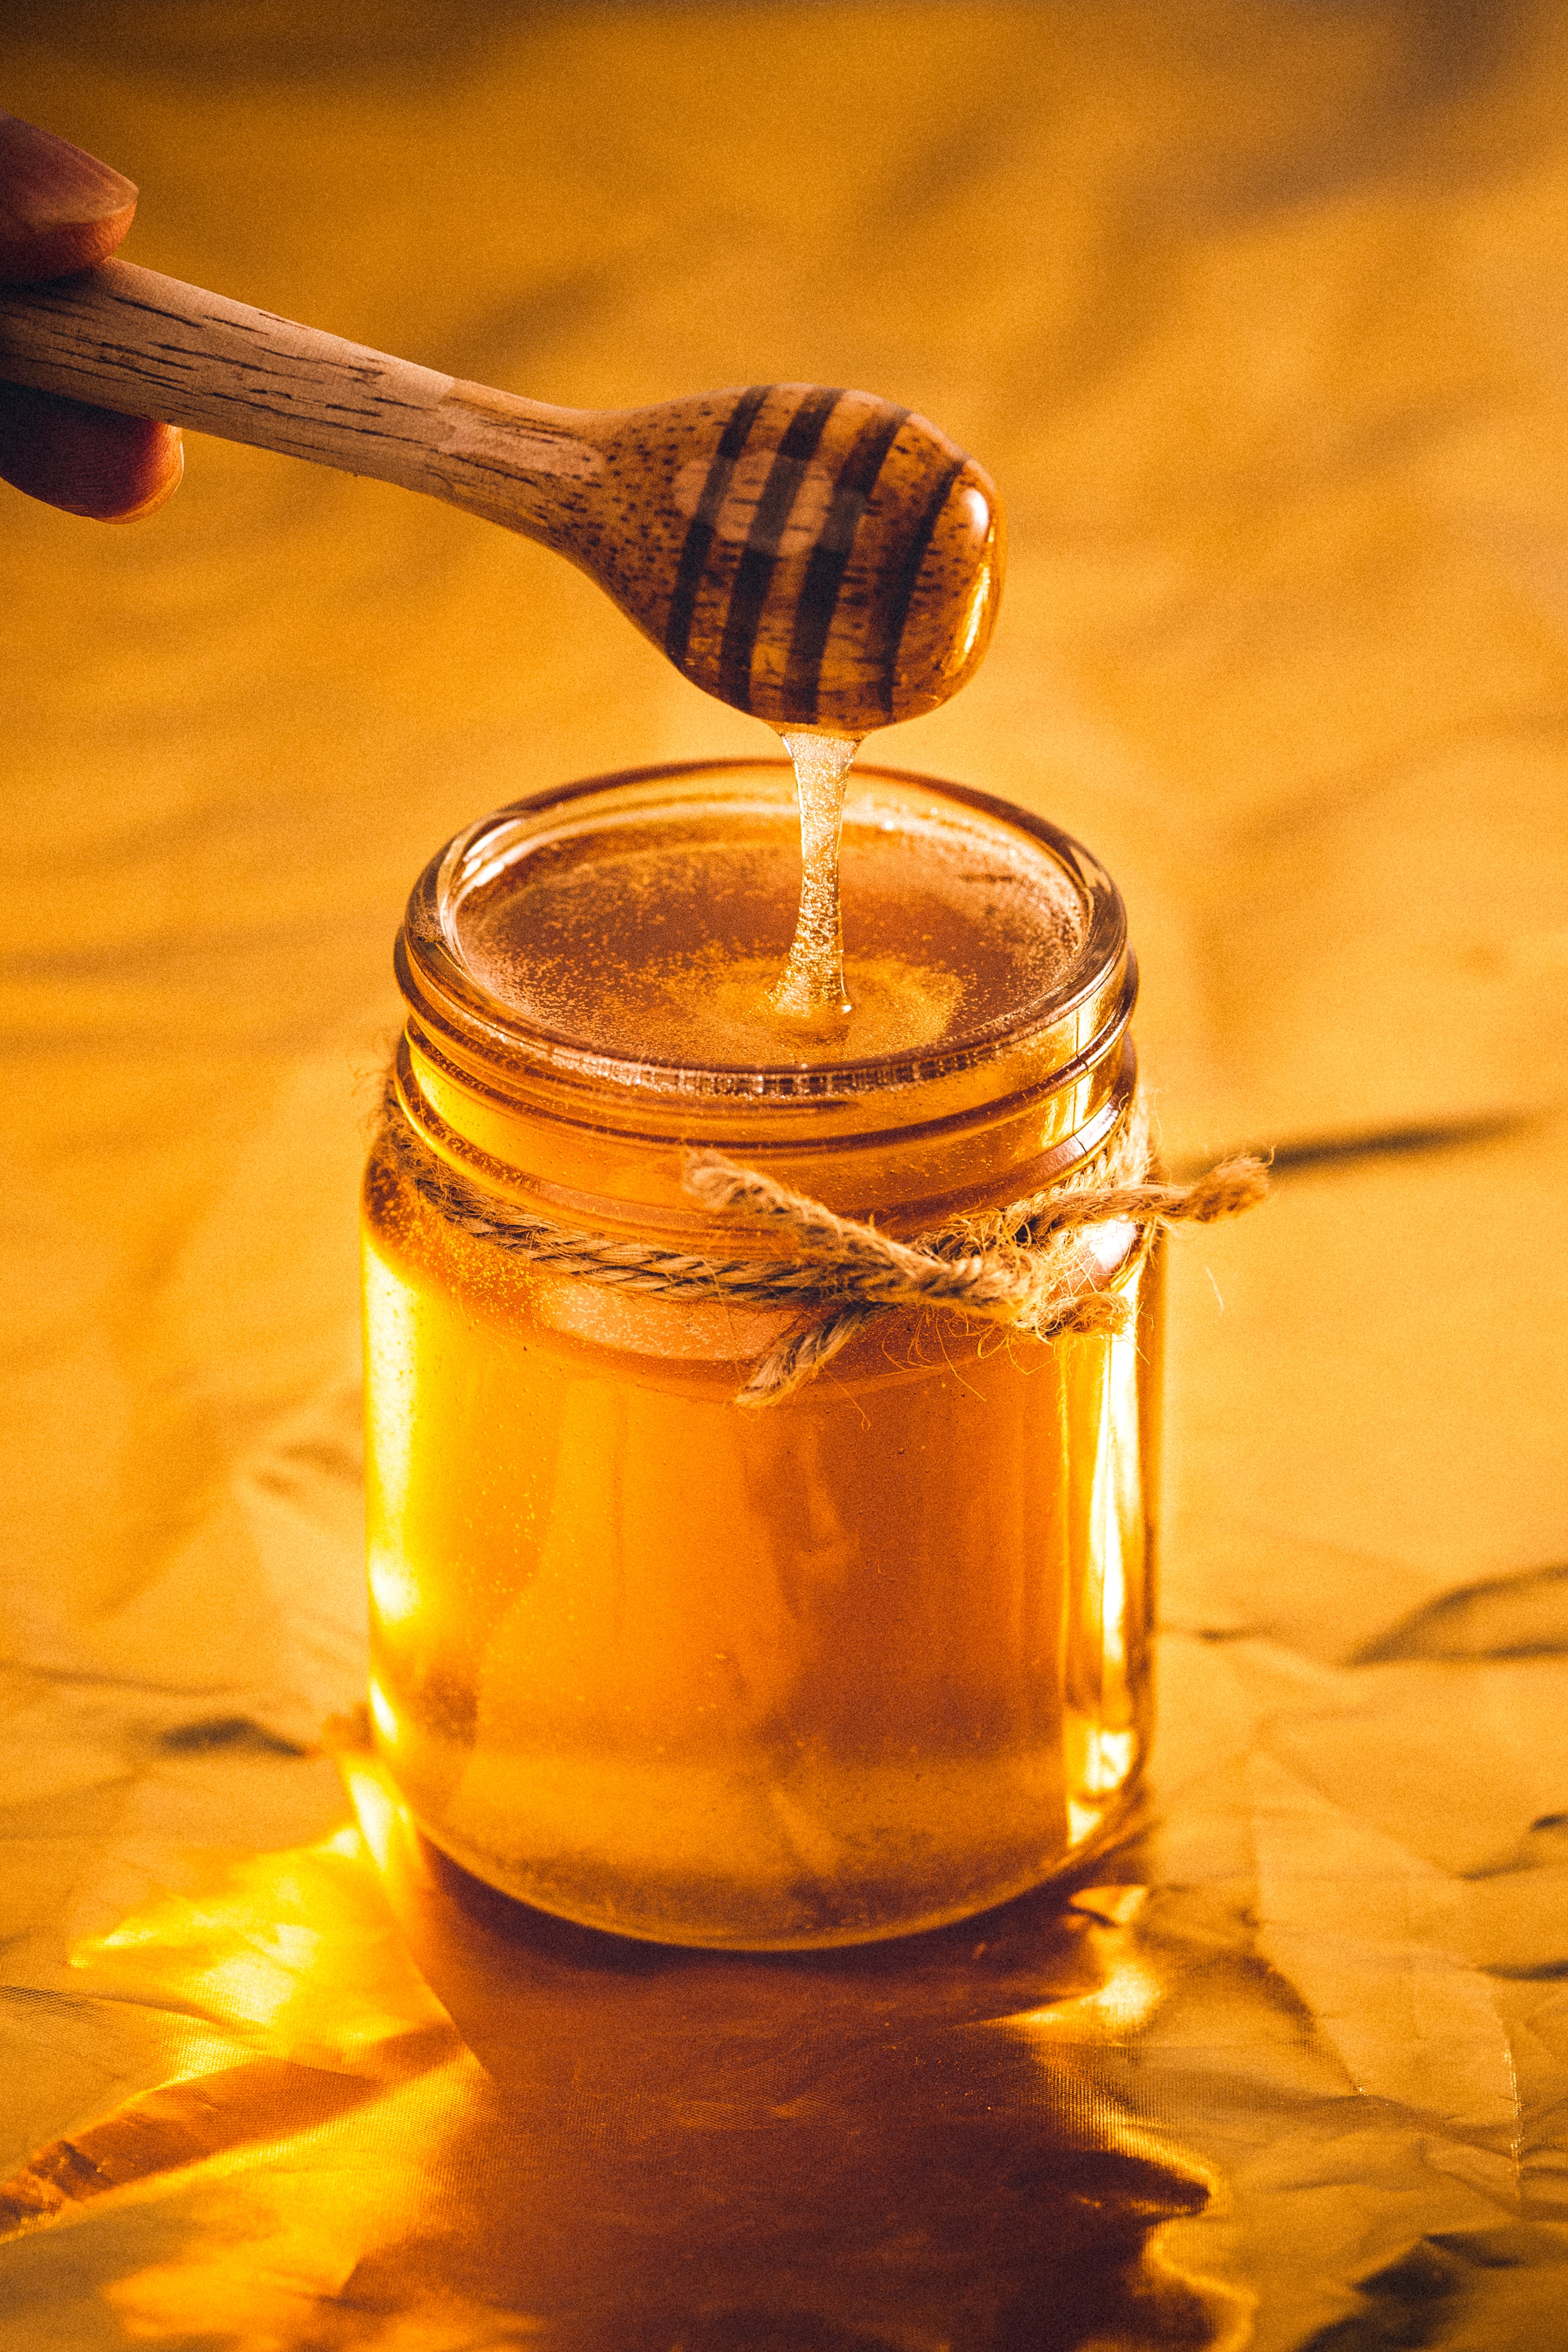 A jar of Manuka honey